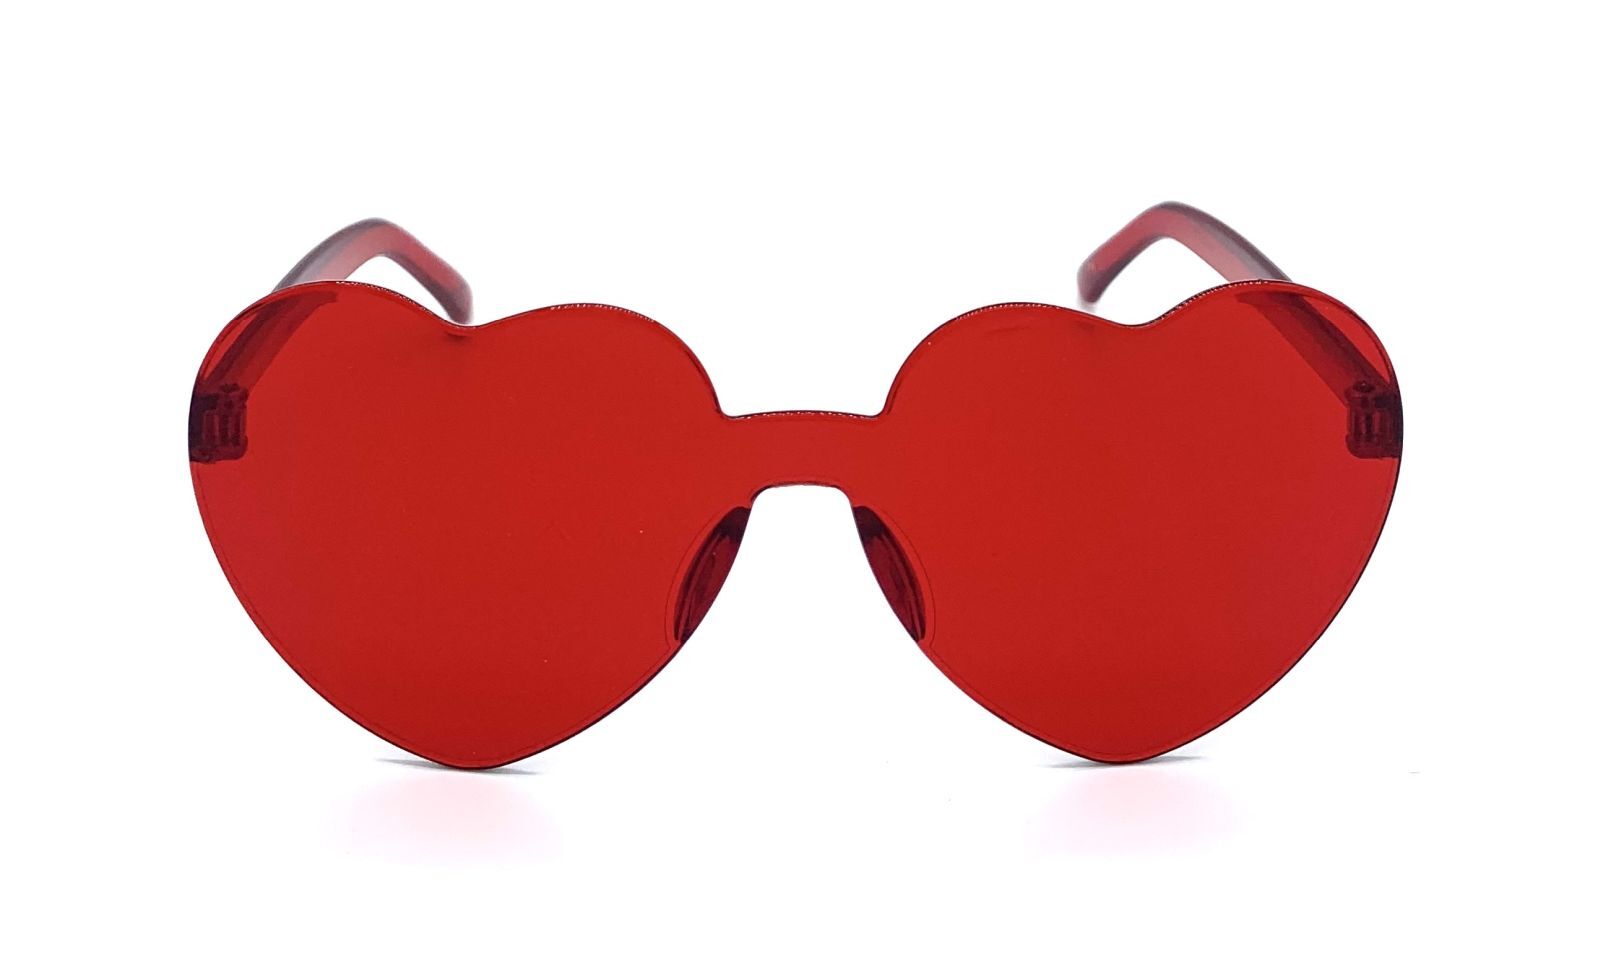 Очко сердечко. Очки сердечки красные. Очкиcthlwf. Красные пластиковые очки. Красные очки серлечк.